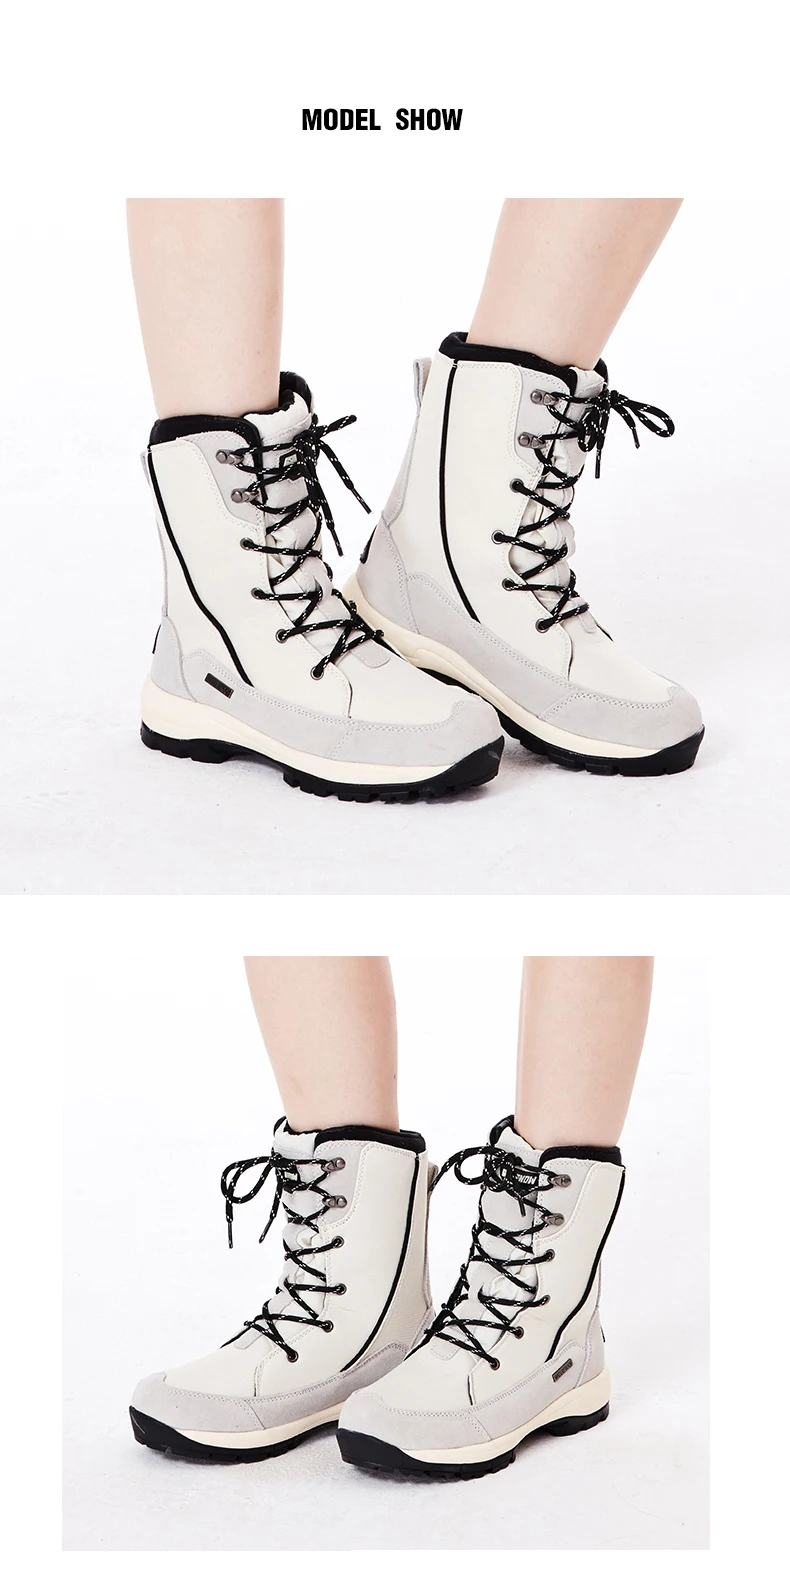 Gsou/новые зимние уличные ботинки, женская непромокаемая обувь, Нескользящие очень теплые зимние женские походные ботинки для альпинизма и